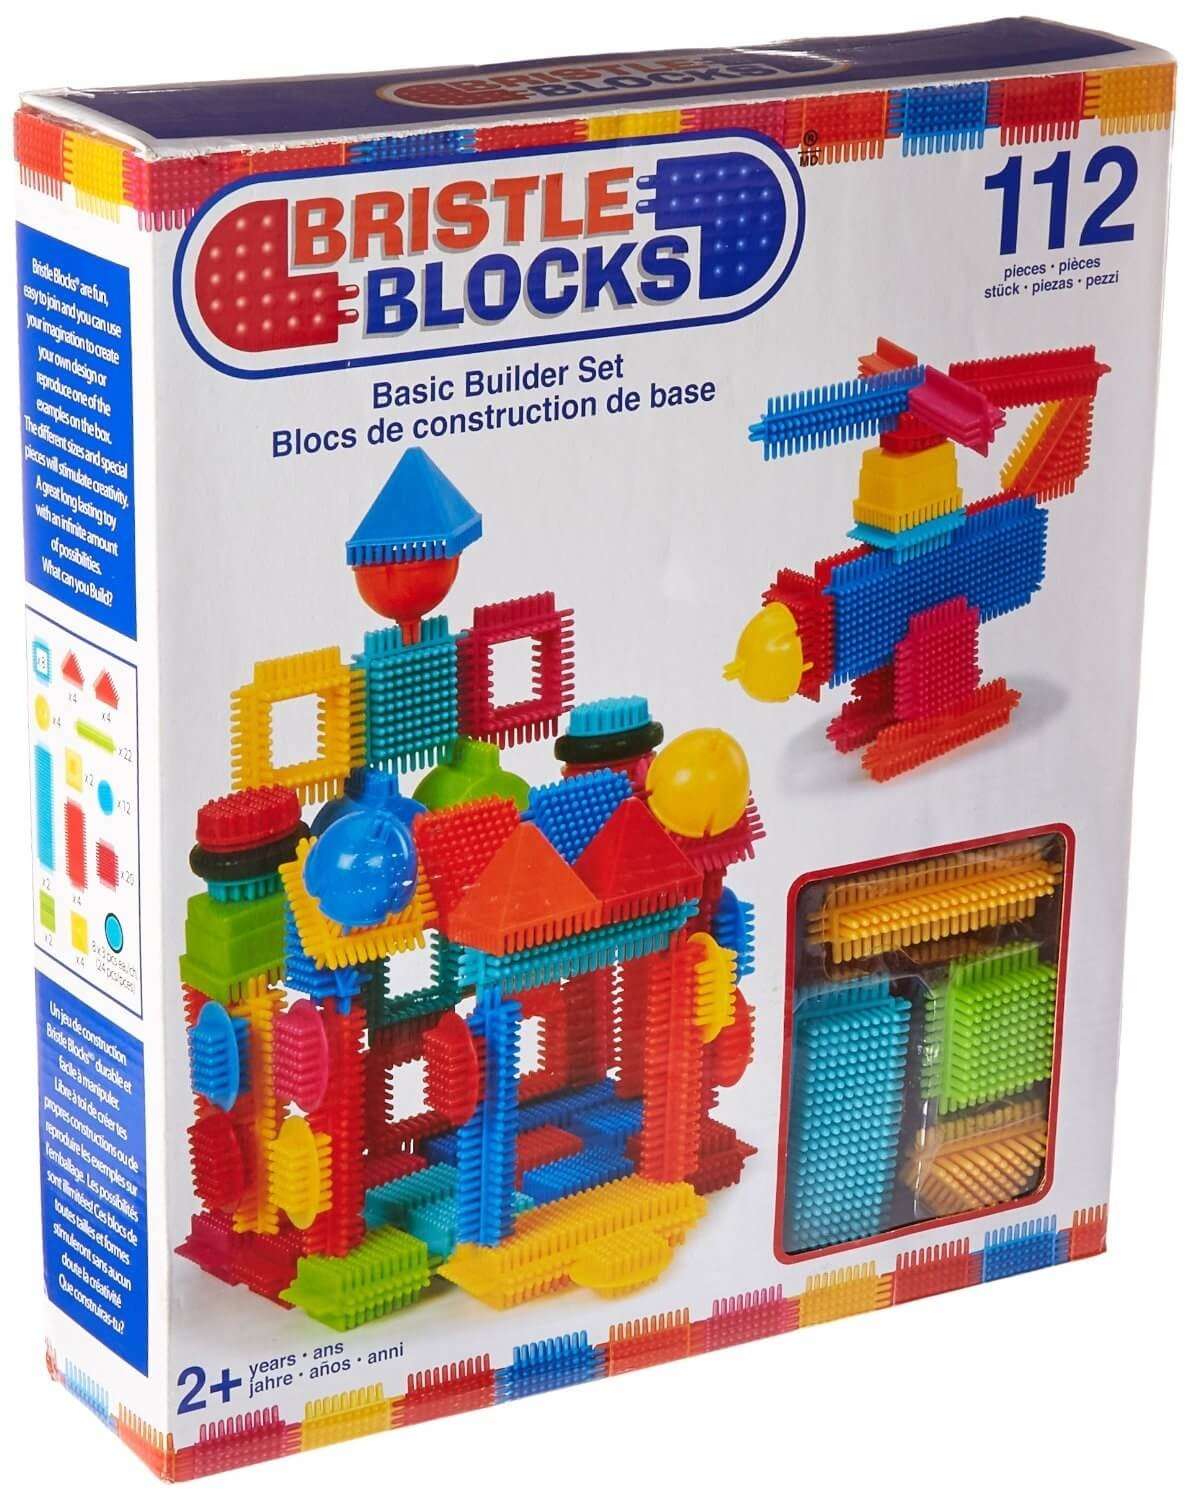 best building toys for preschoolers